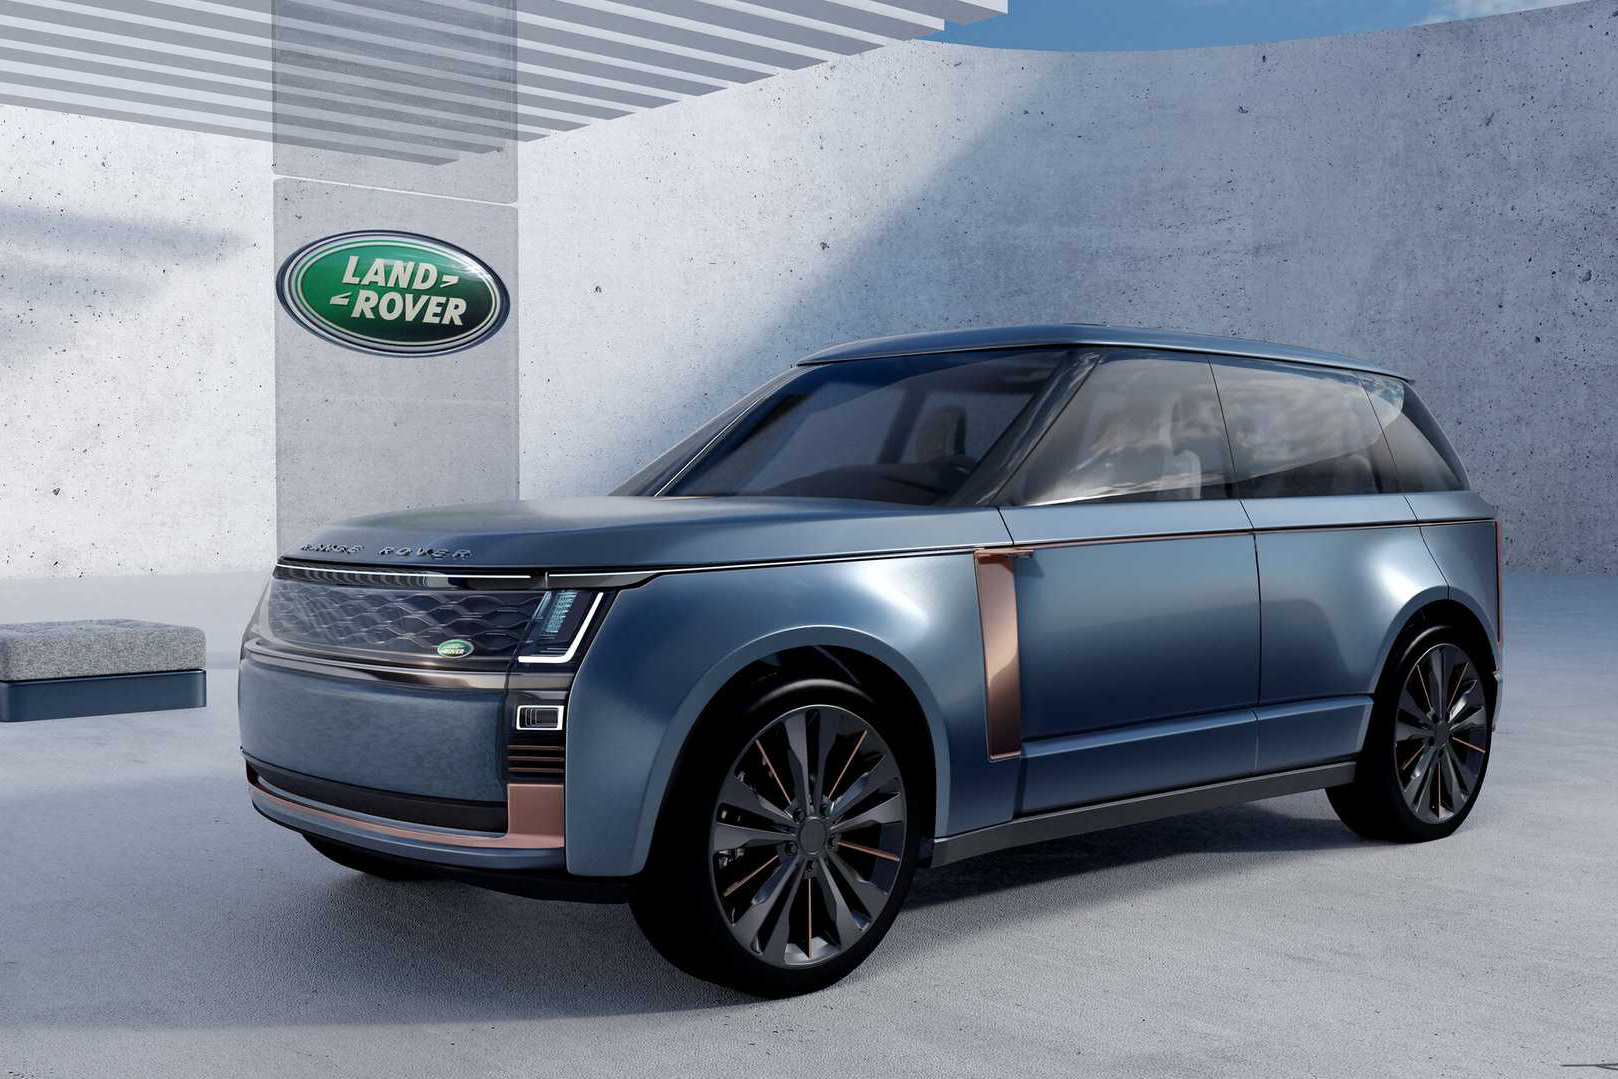 Range Rover đời mới lần đầu lộ nội thất: Thêm màn hình lớn, nhiều chi tiết giống Discovery facelift